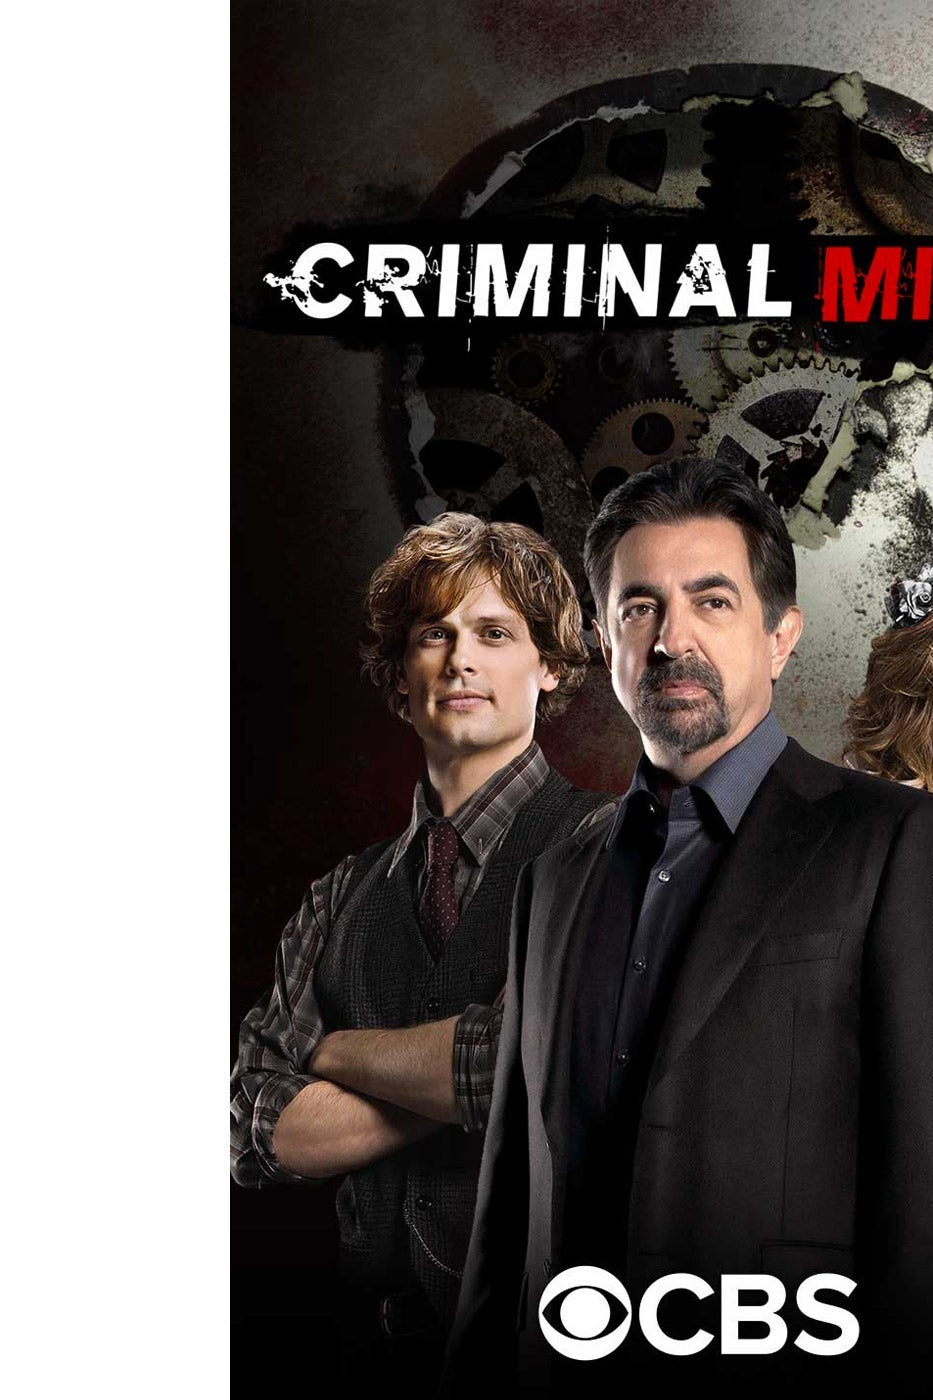 Cover art for Criminal Minds.